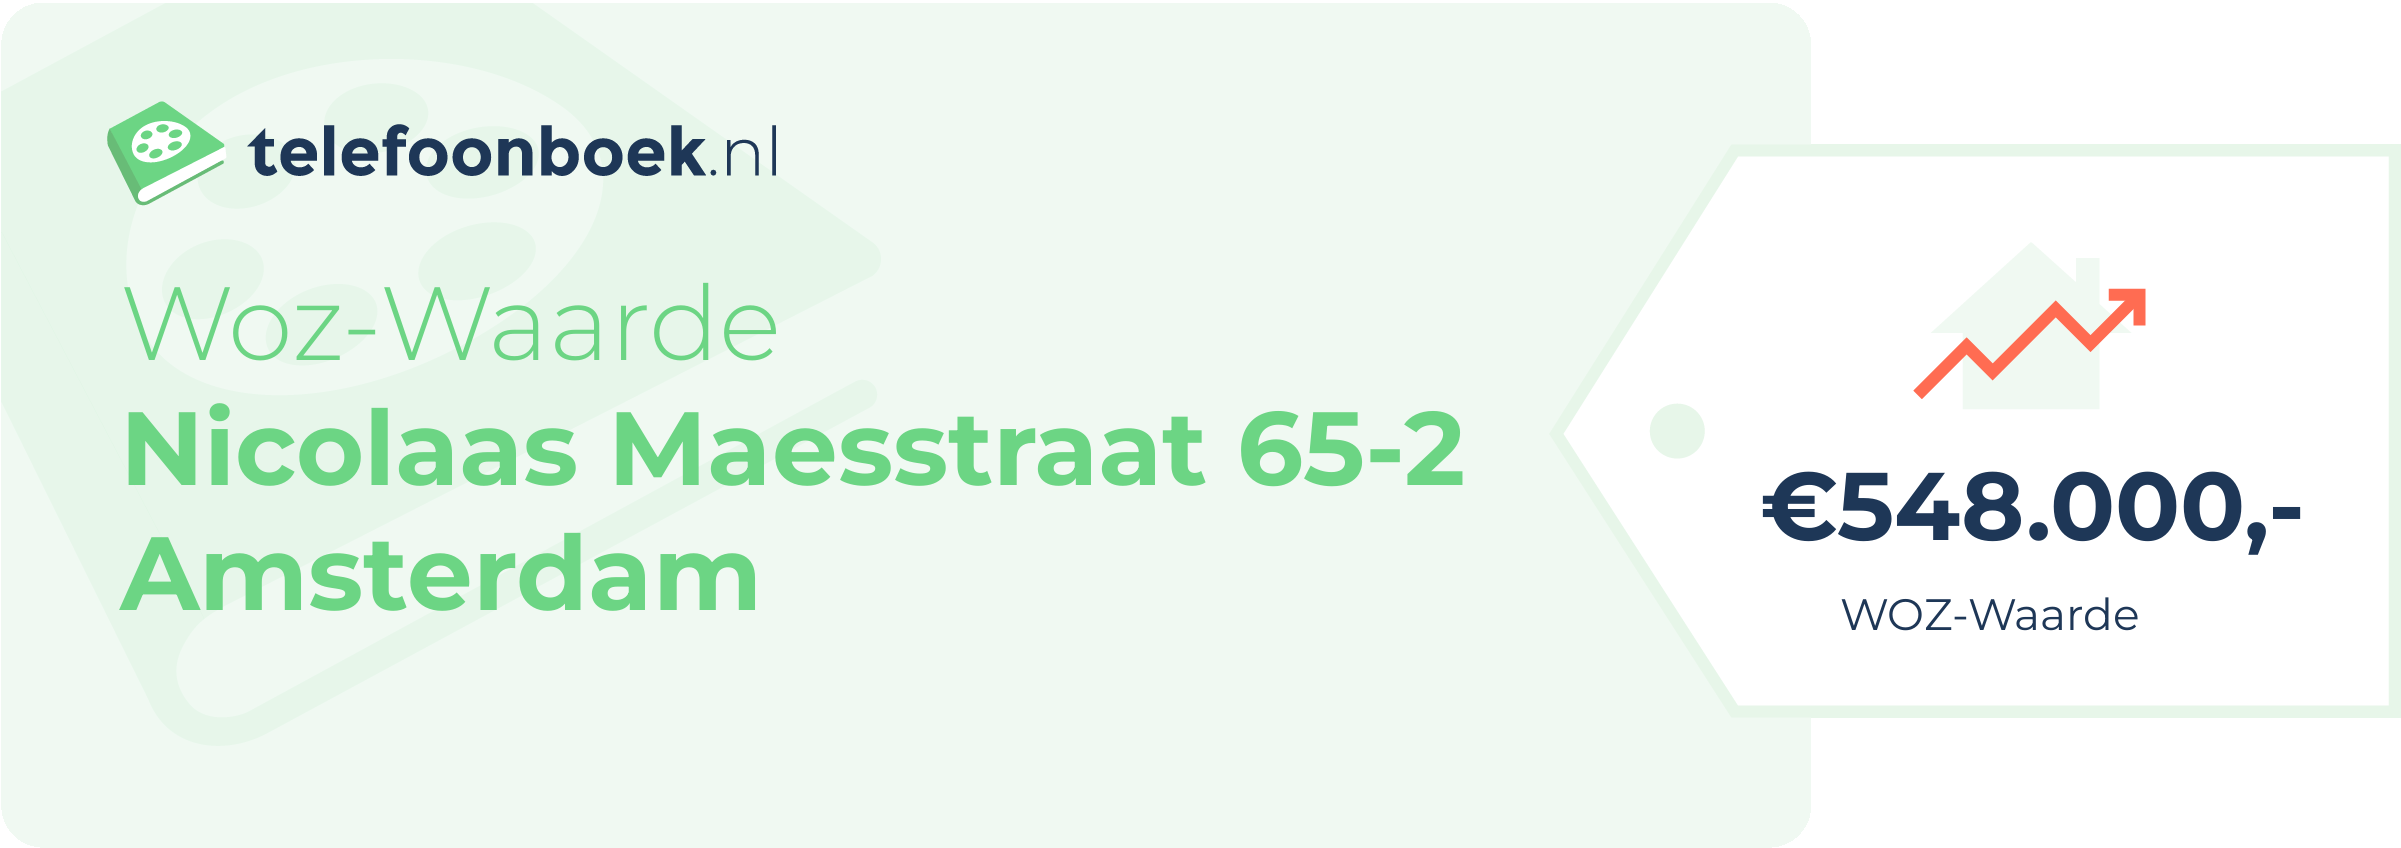 WOZ-waarde Nicolaas Maesstraat 65-2 Amsterdam